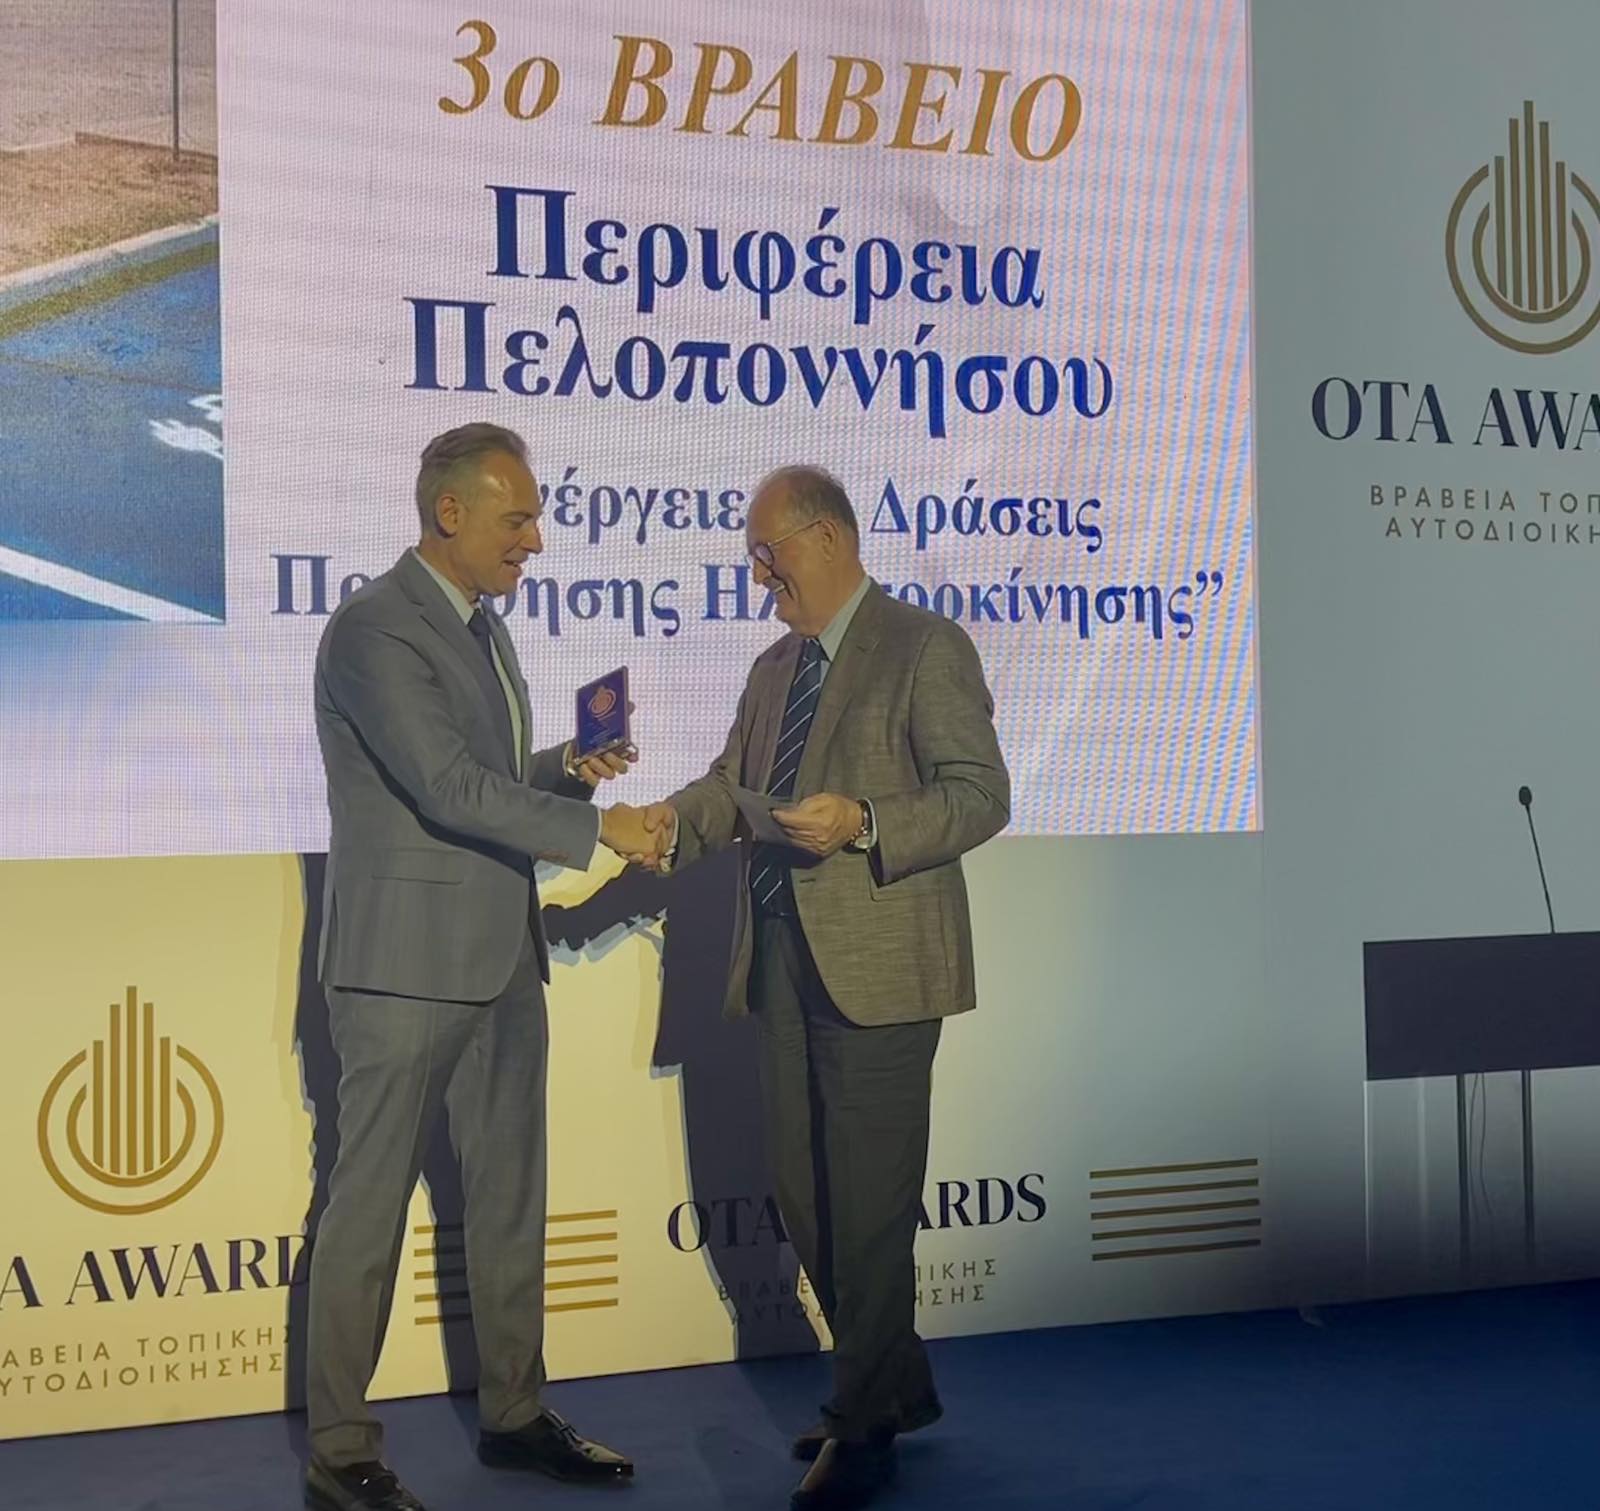 Εννέα διακρίσεις για την Περιφέρεια Πελοποννήσου παρέλαβε ο περιφερειάρχης Π. Νίκας στην εκδήλωση ΟΤΑ Awards 2019 – 2023, στο Ζάππειο